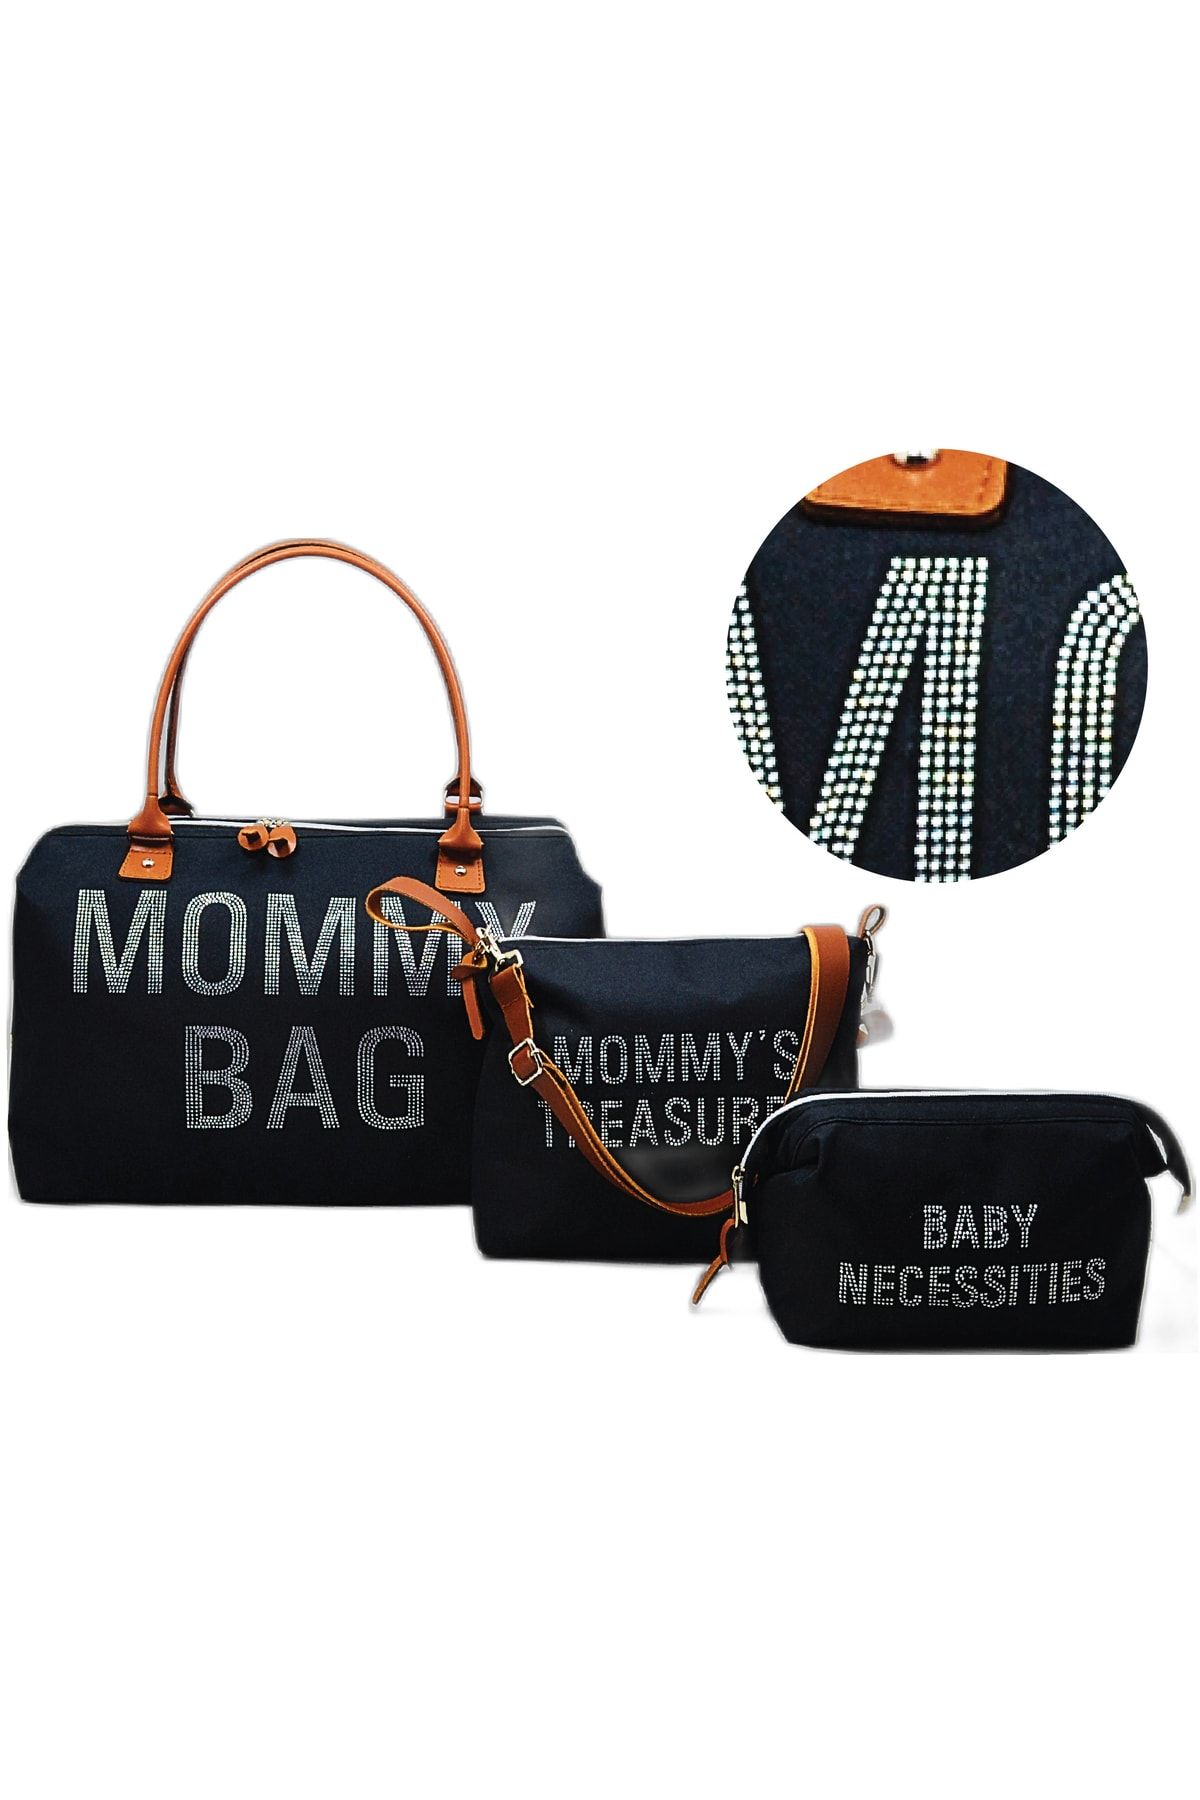 Babysi Taş Tasarım Mommy Baby Bag Exclusive 3 Lü Set Siyah Anne Bebek Bakım Ve Kadın Çantası